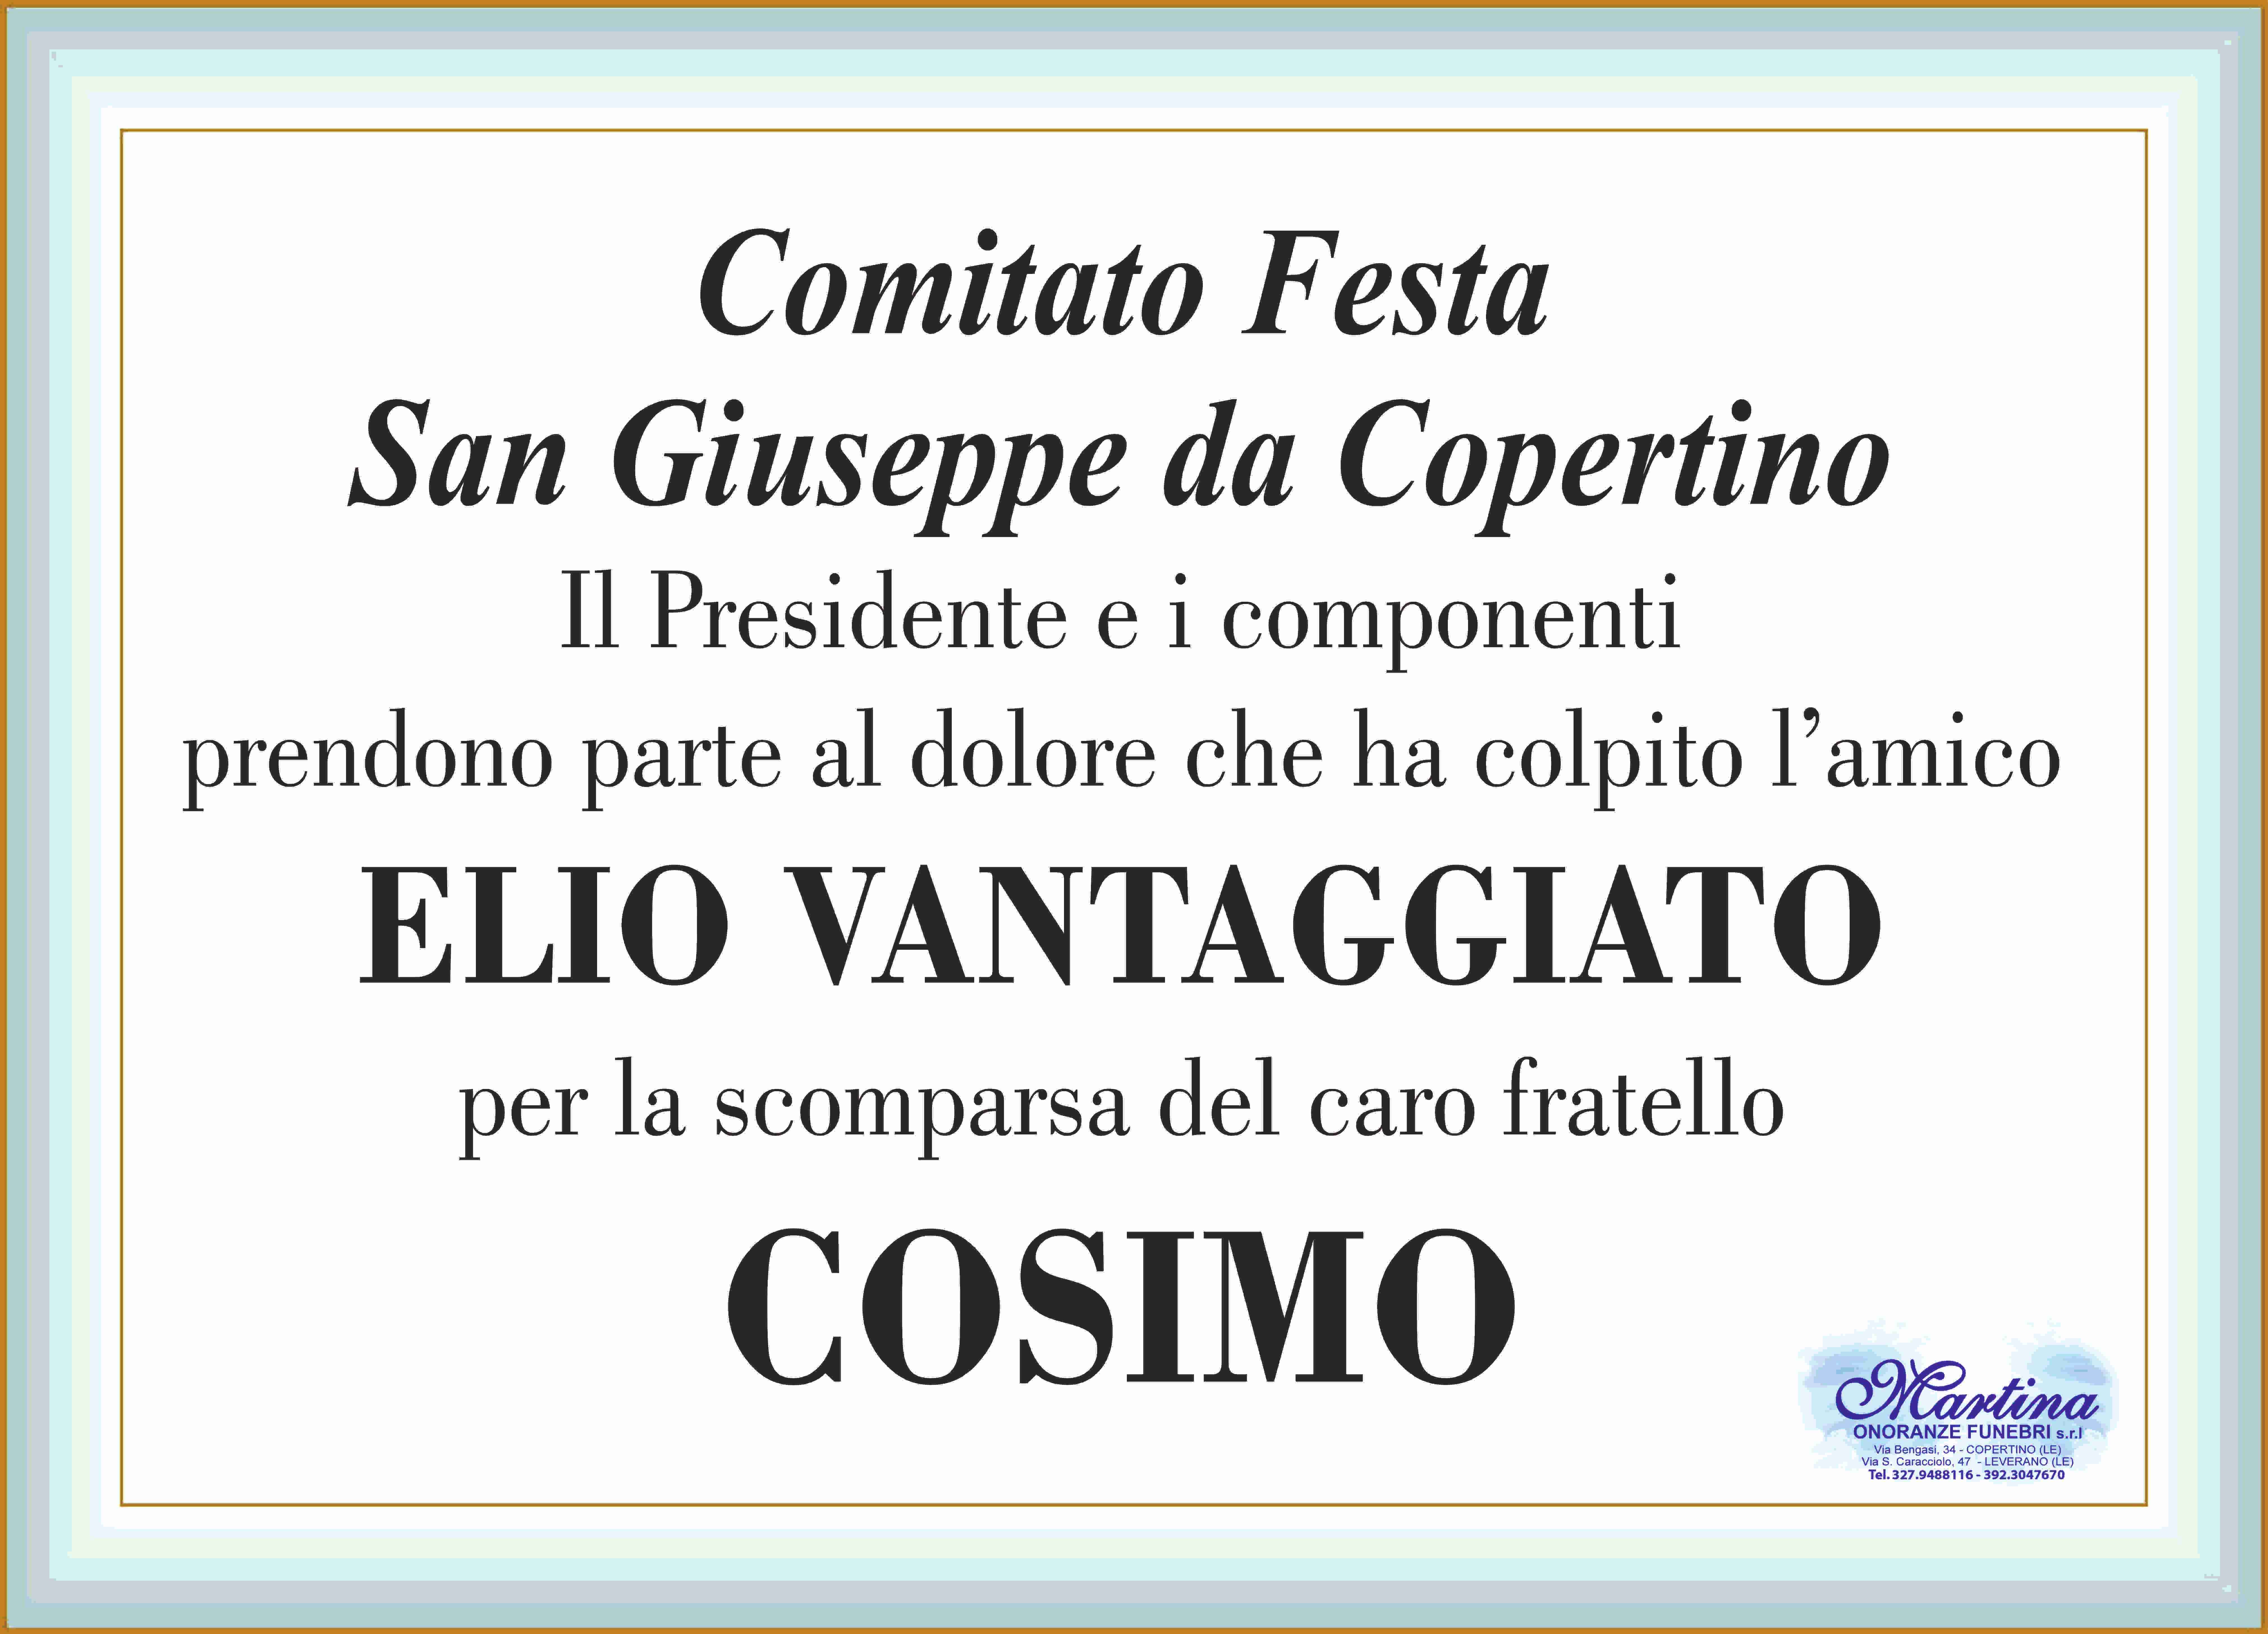 Cosimo Vantaggiato